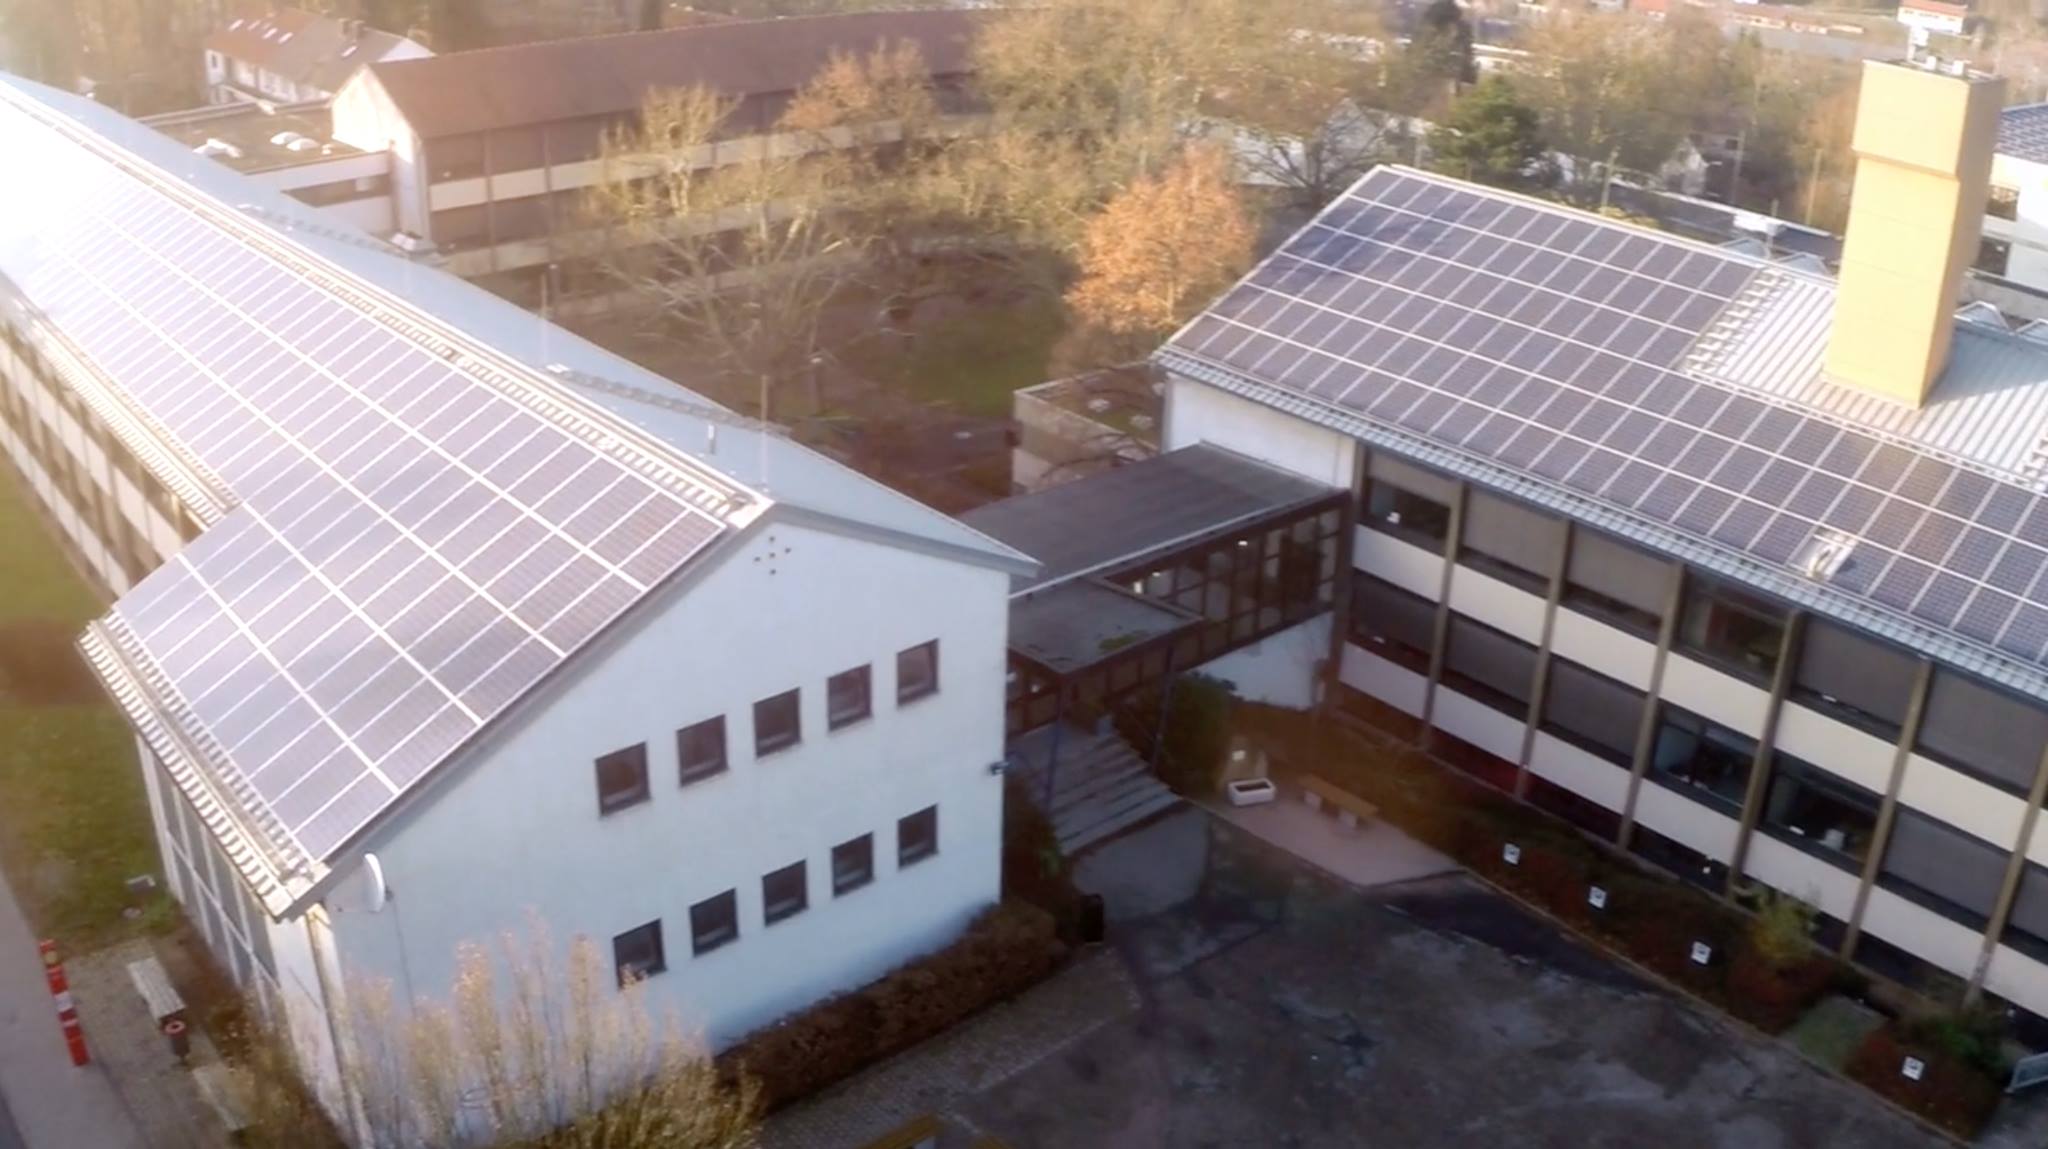 Zum neuen Schuljahr 2019 schafft das Berufsbildungszentrum St. Ingbert – Willi-Graf-Schule – Einwegbecher ab.